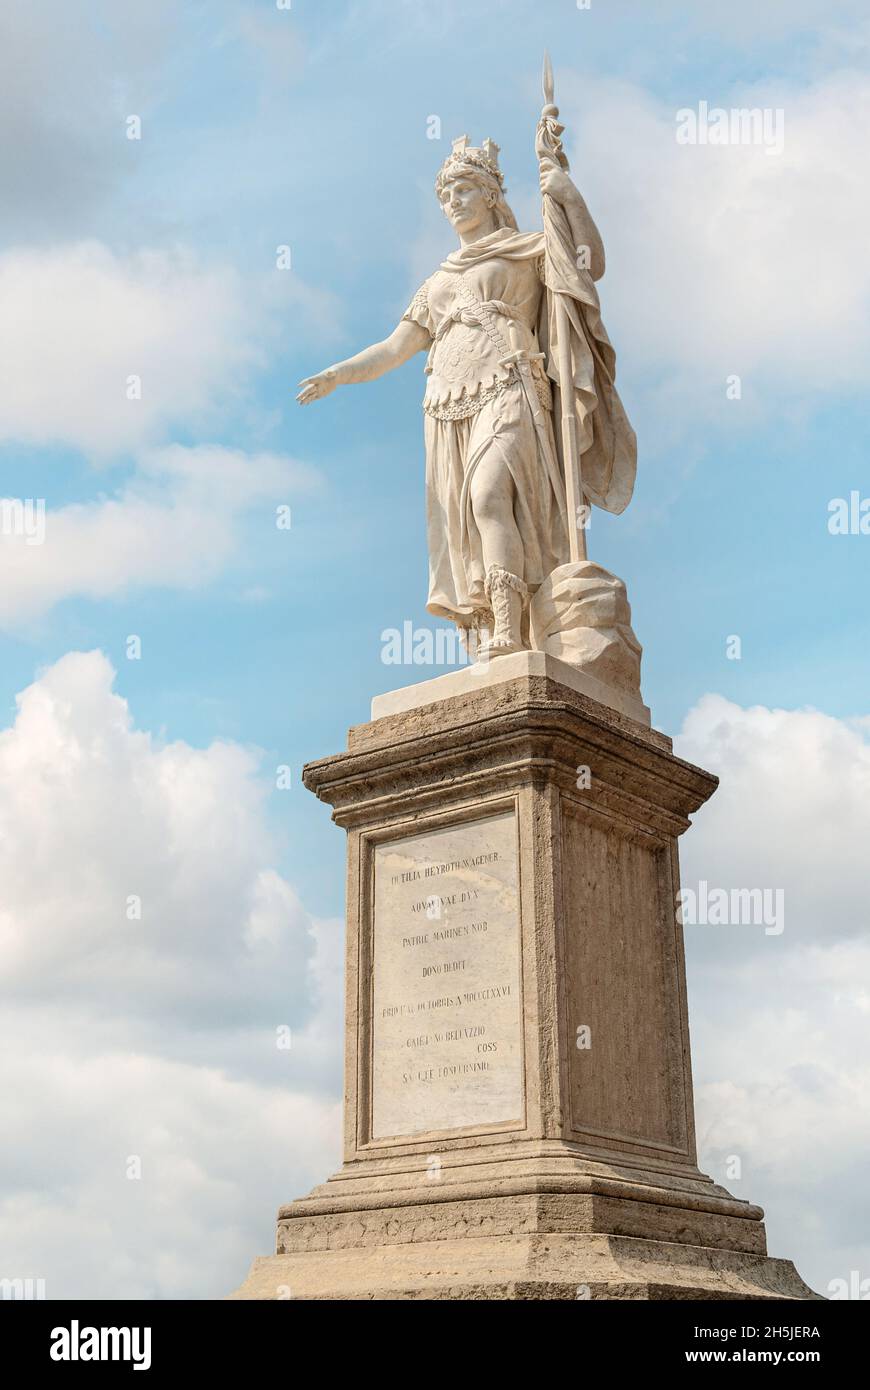 Statua della Libertà at the historical town center of San Marino Stock Photo